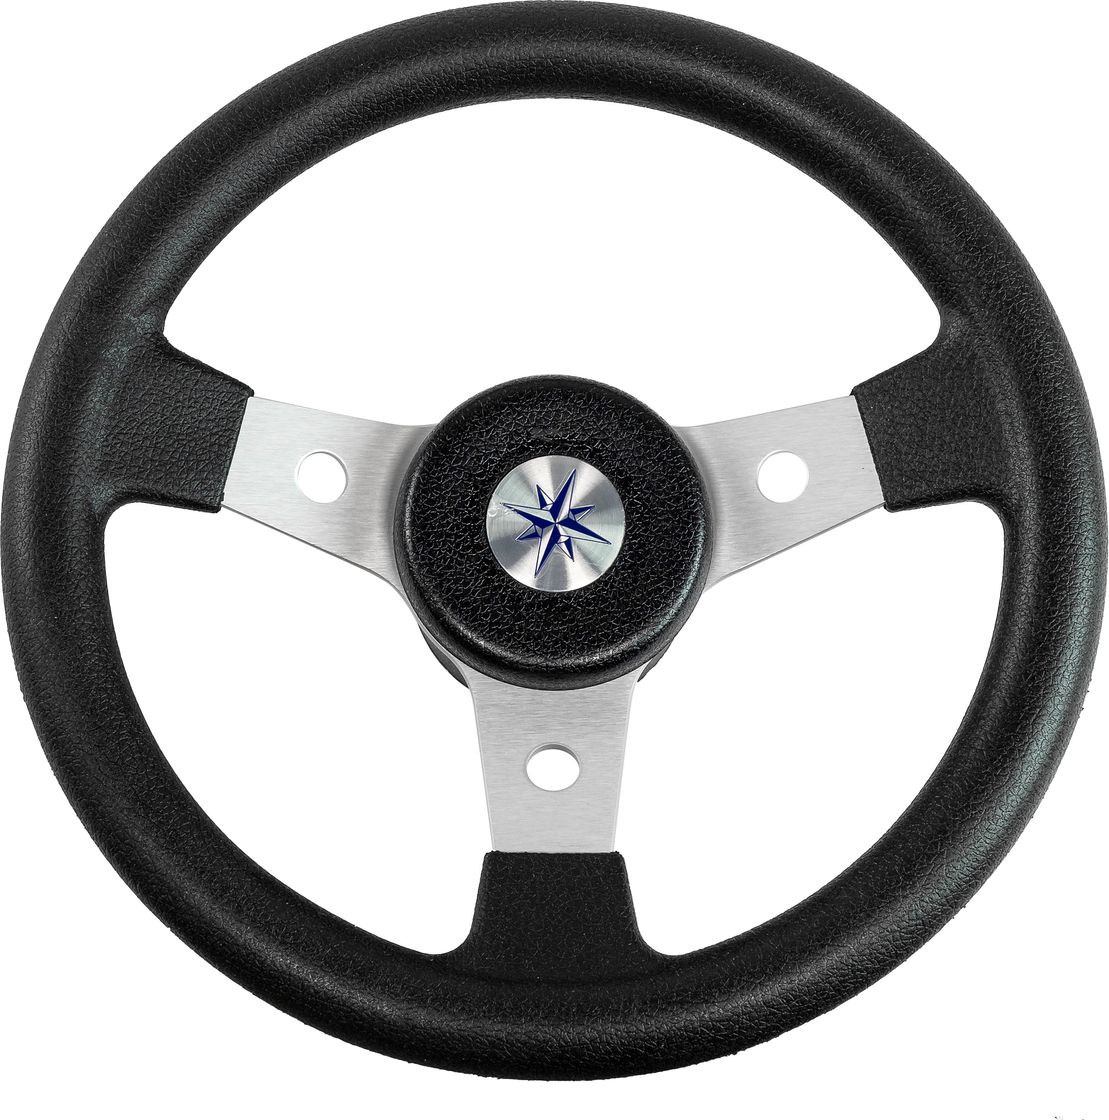 Рулевое колесо DELFINO обод черный,спицы серебряные д. 310 мм VN70103-01 рулевое колесо 7400 7400ss